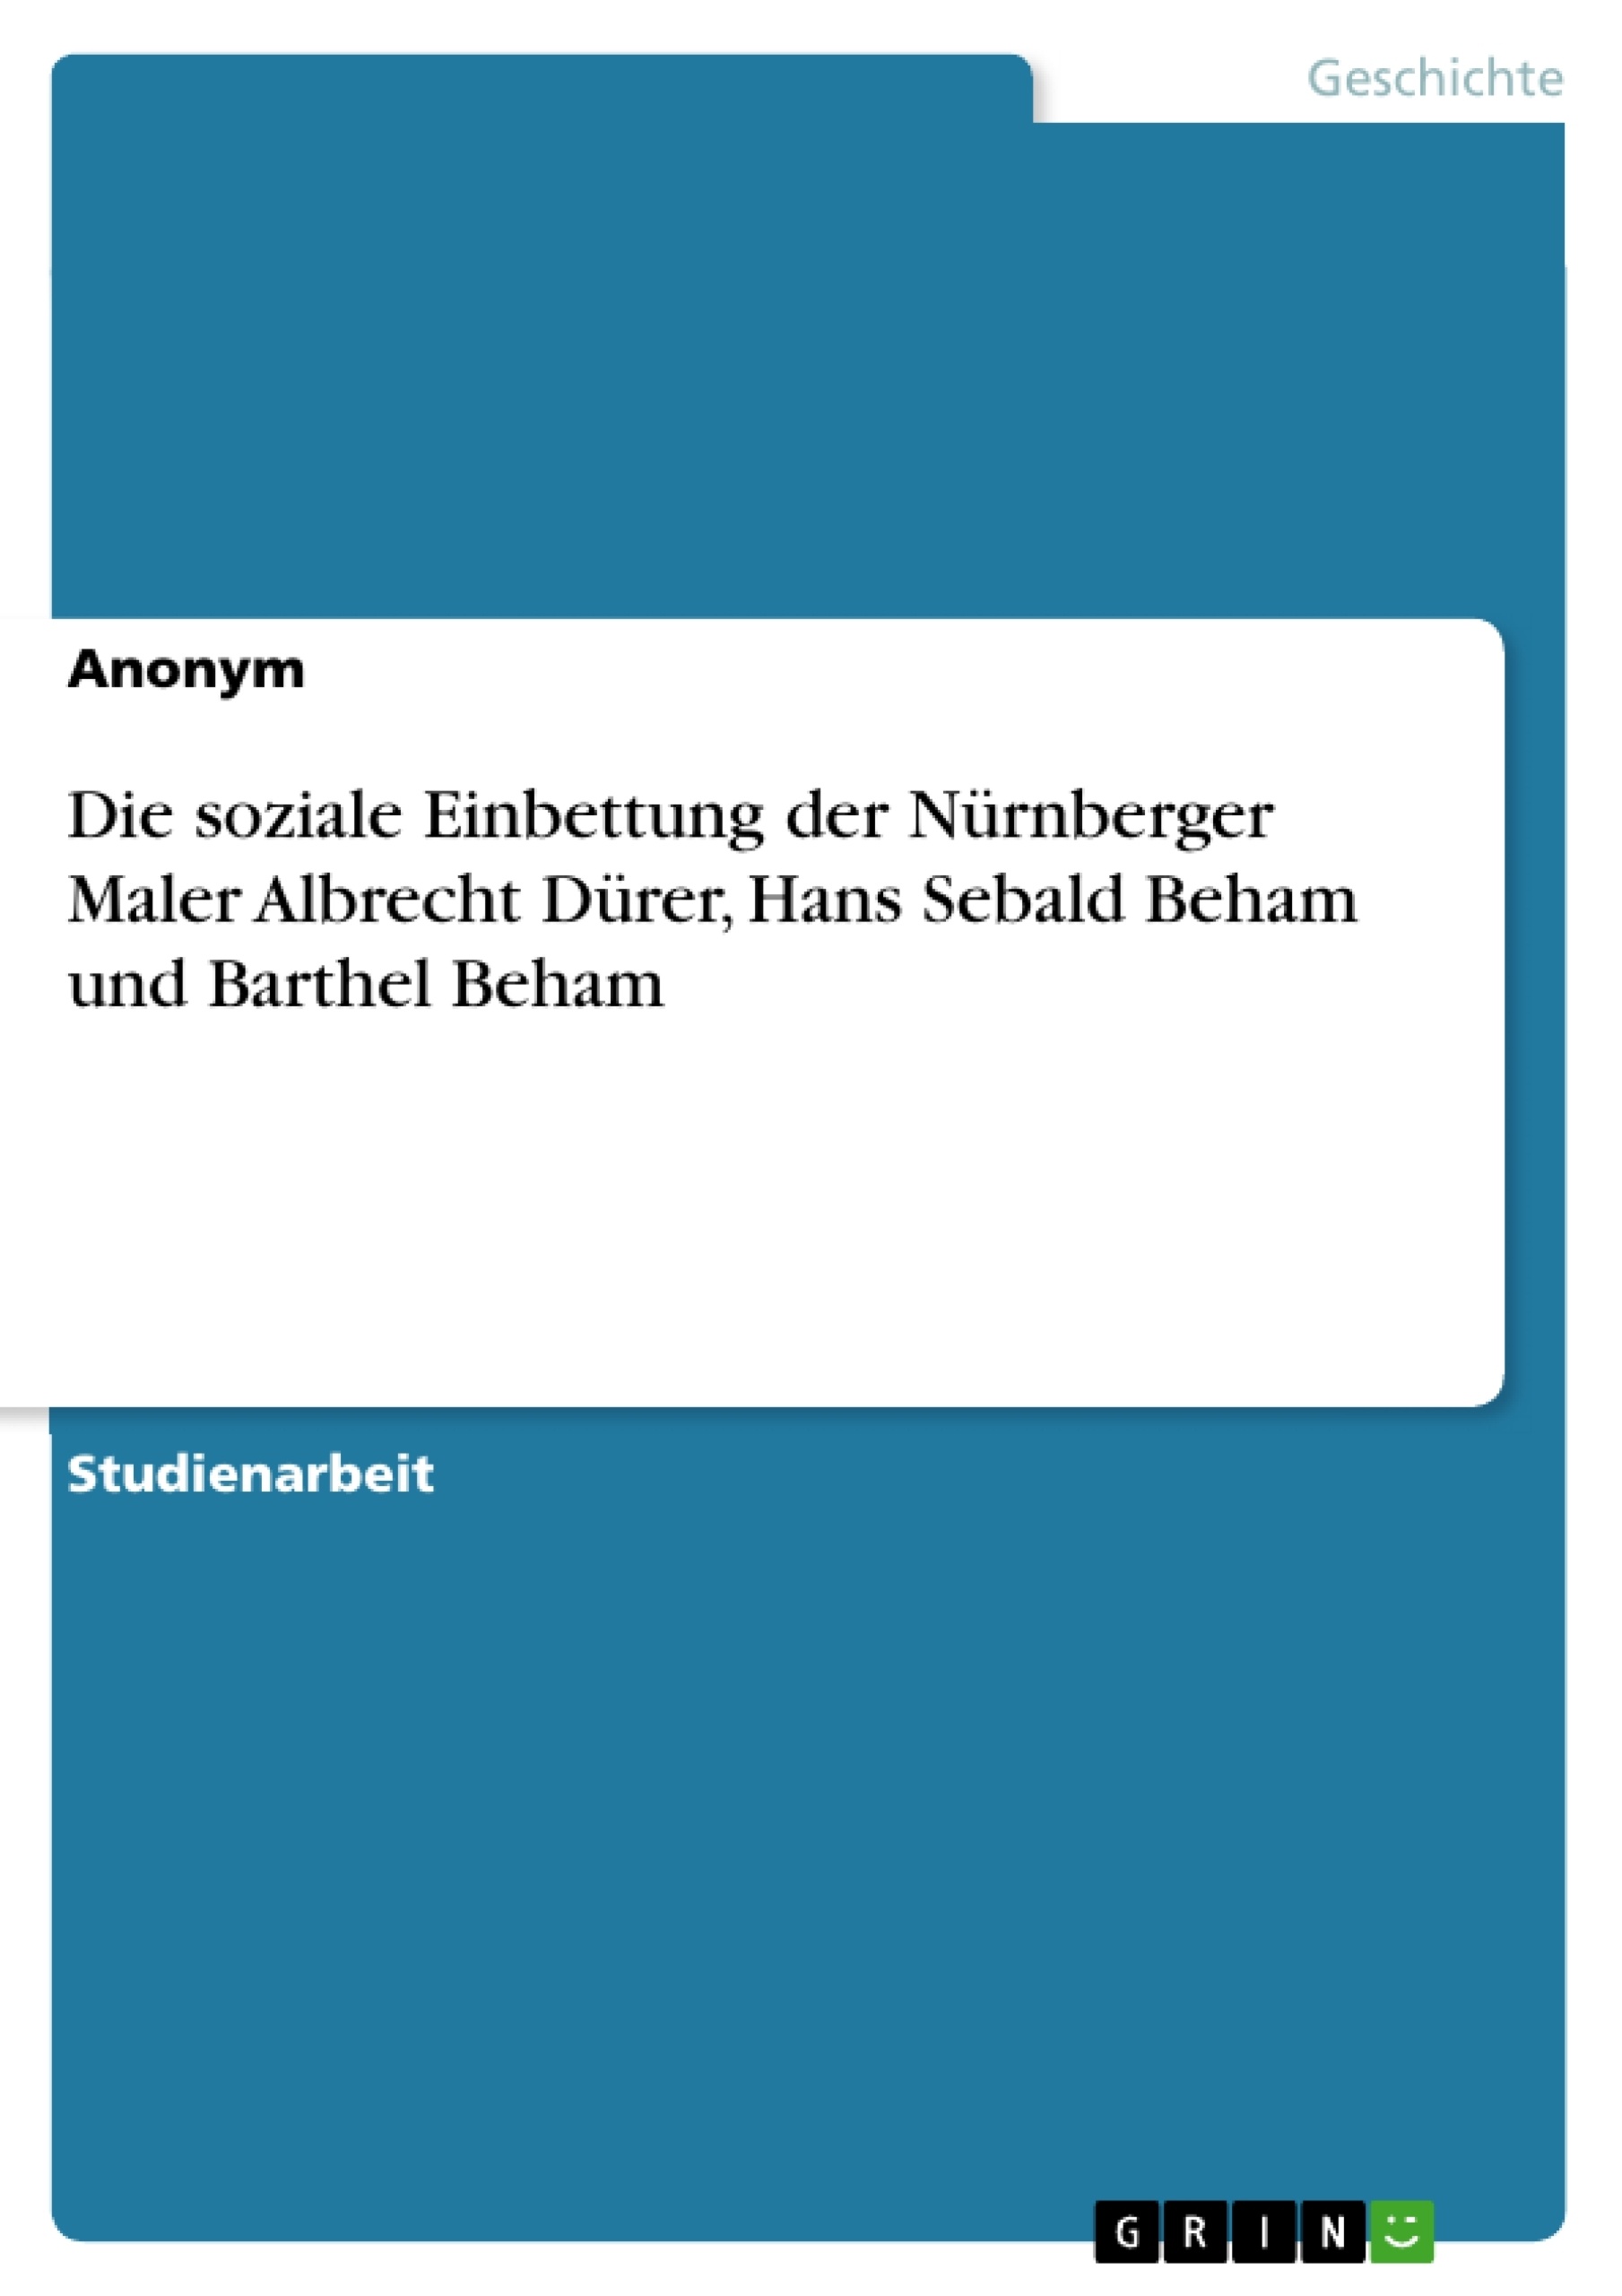 Title: Die soziale Einbettung der Nürnberger Maler Albrecht Dürer, Hans Sebald Beham und Barthel Beham